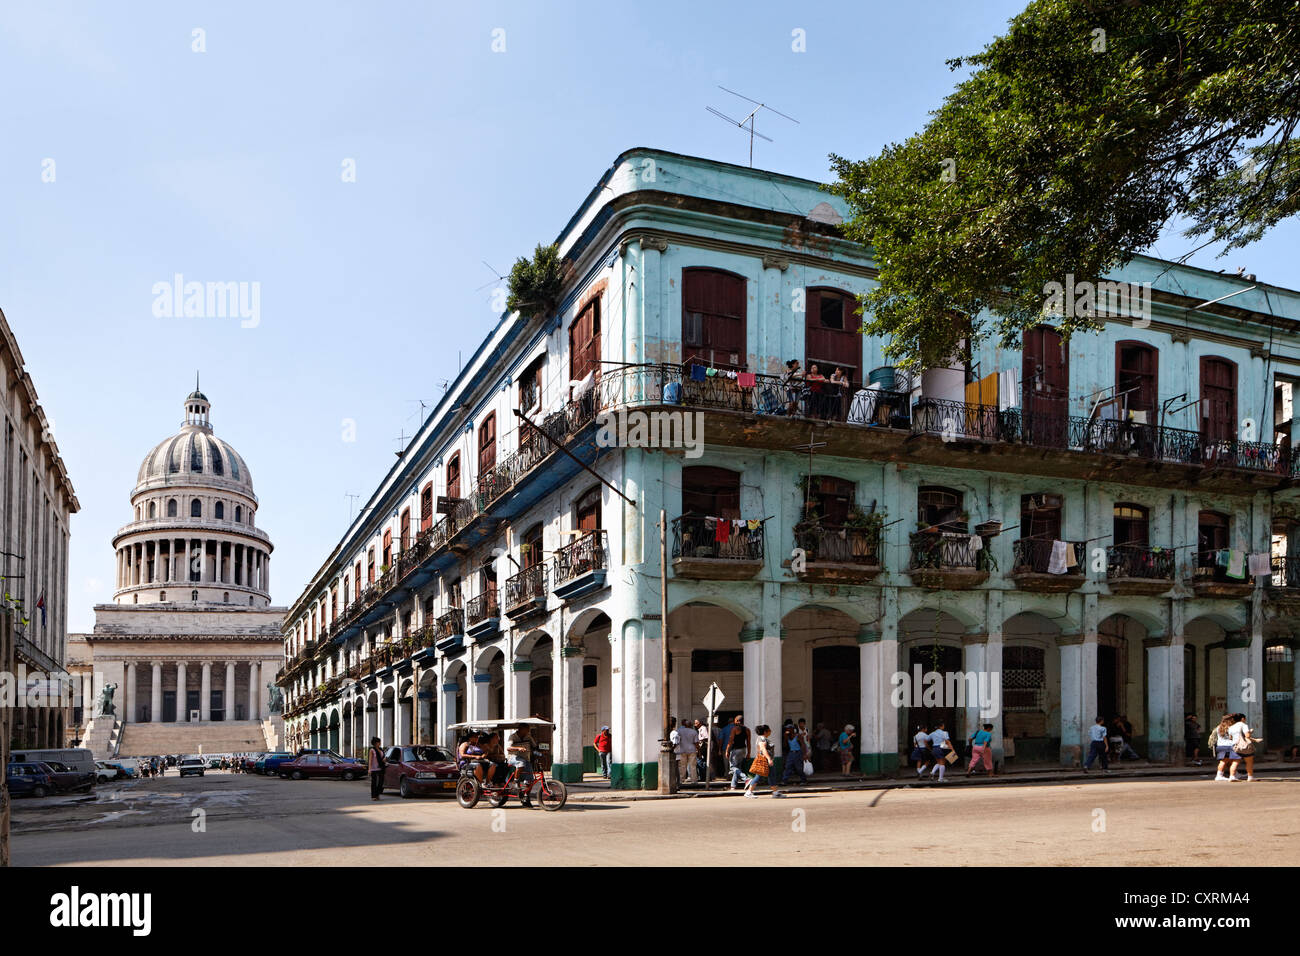 El Capitolio oder National Capitol Building, verfallenen Fassade mit Balkonen, Straße, Passanten, La Habana, Havana Stockfoto